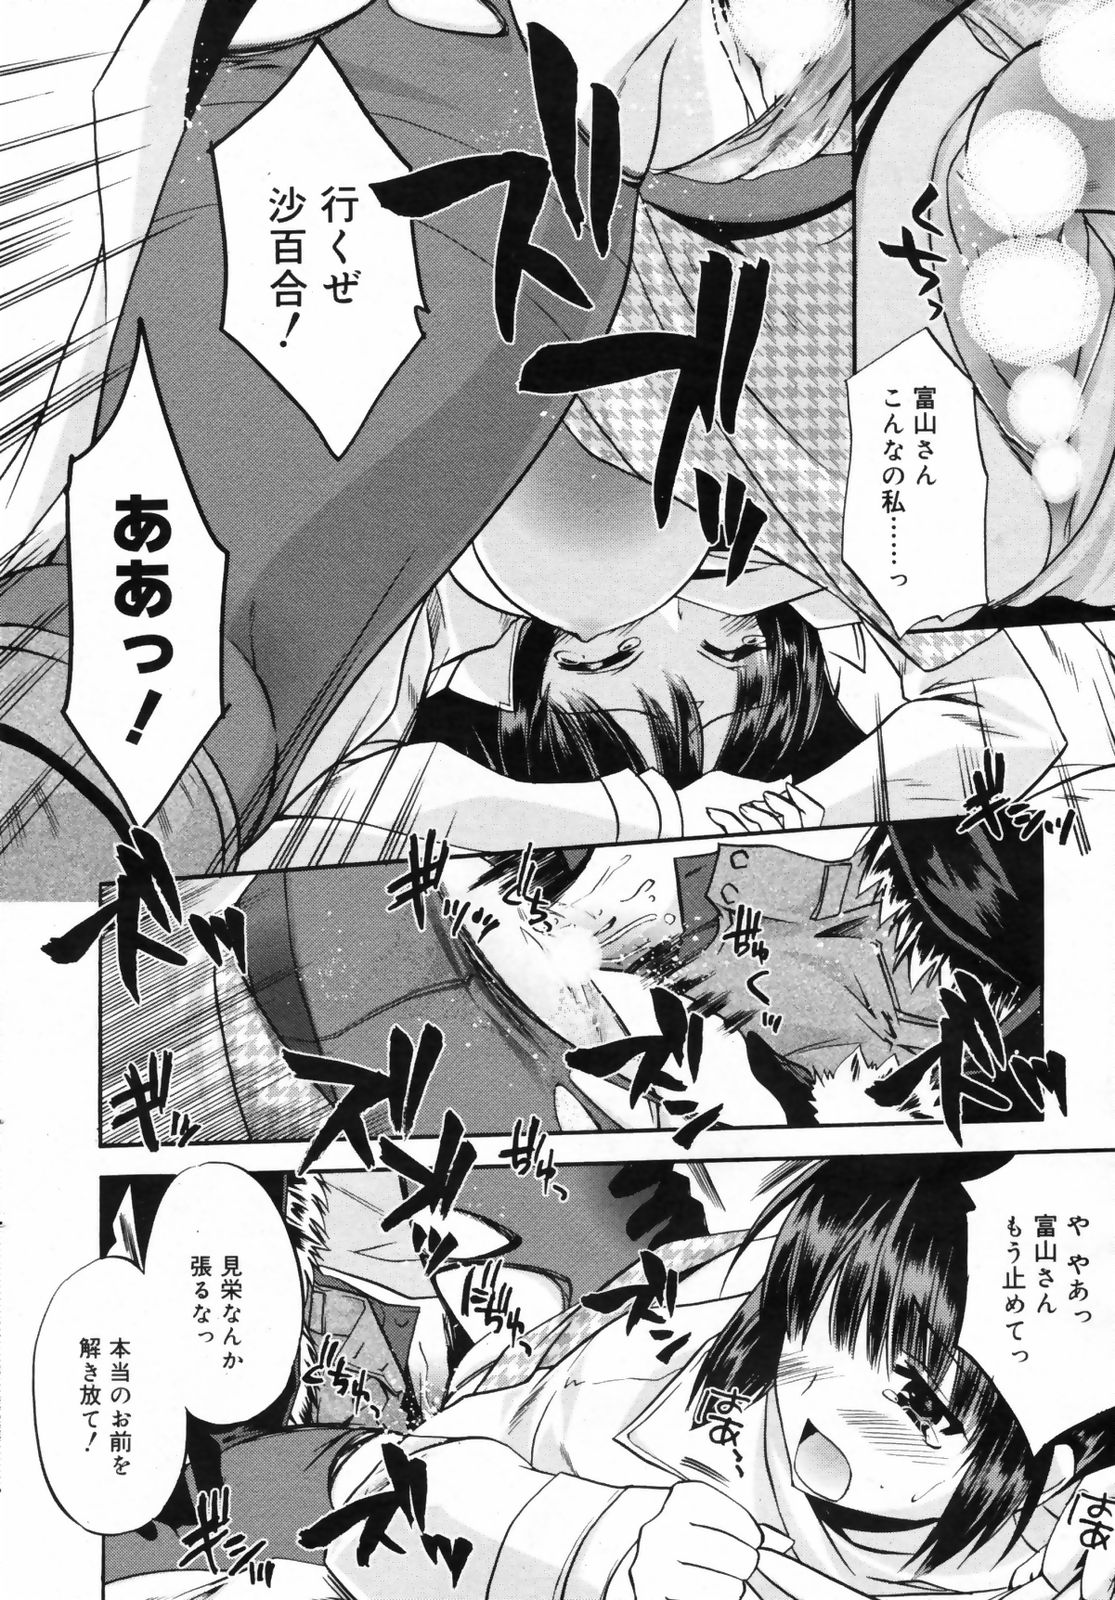 Manga Bangaichi 2009-02 Vol. 234 page 48 full